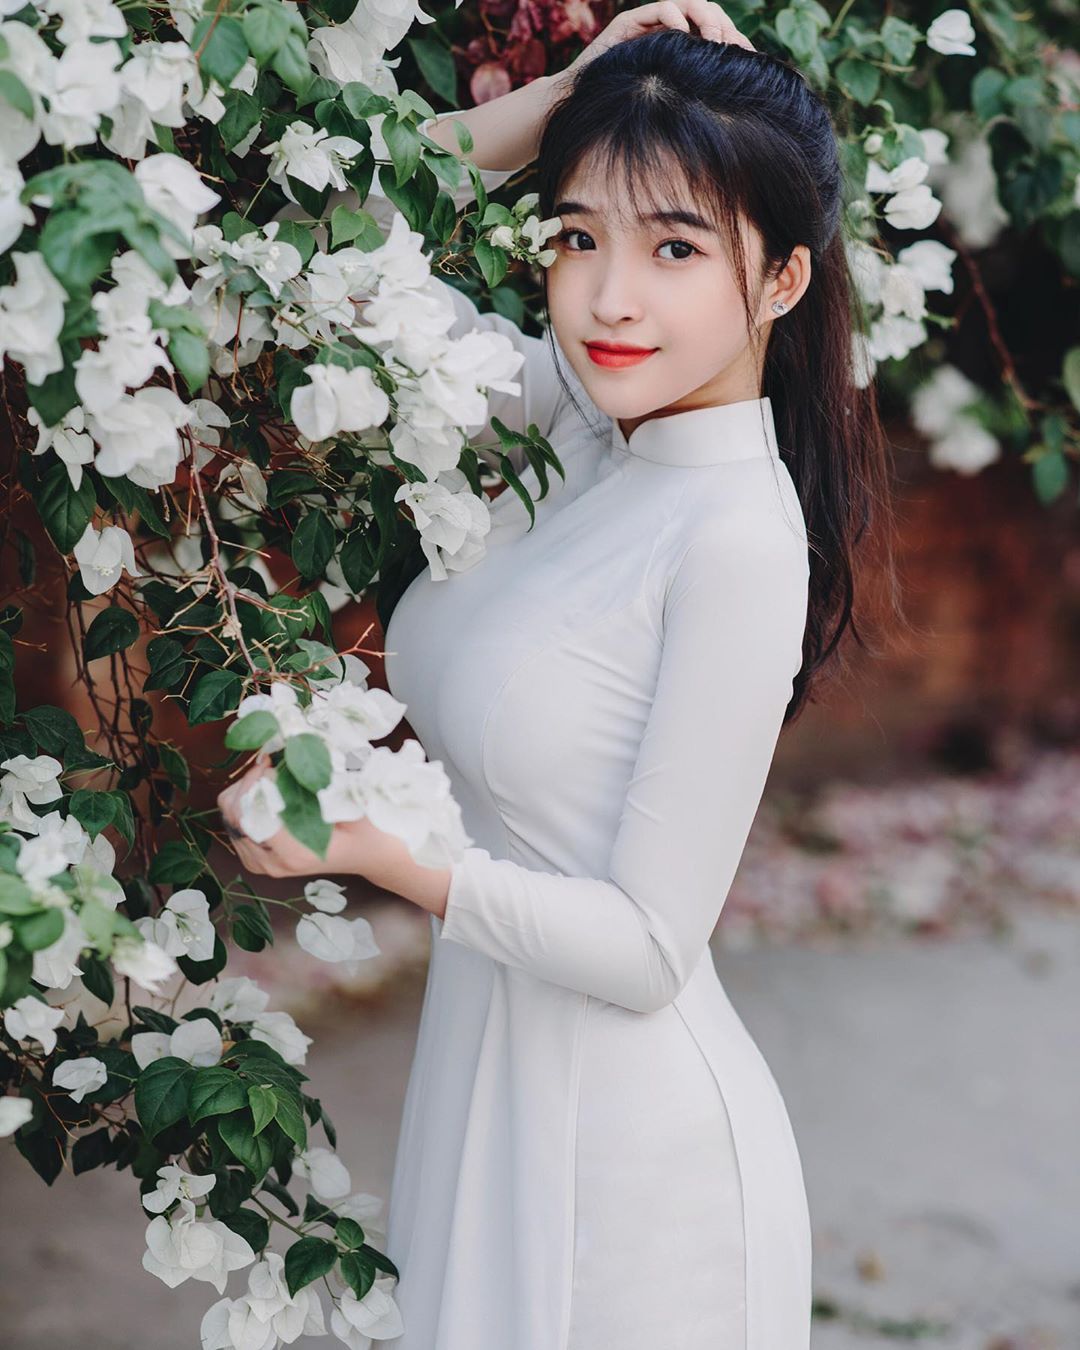 Nữ sinh Việt vừa tuổi 18 nổi tiếng nhờ mặc áo dài trắng ôm sát tôn dáng vóc nữ thần